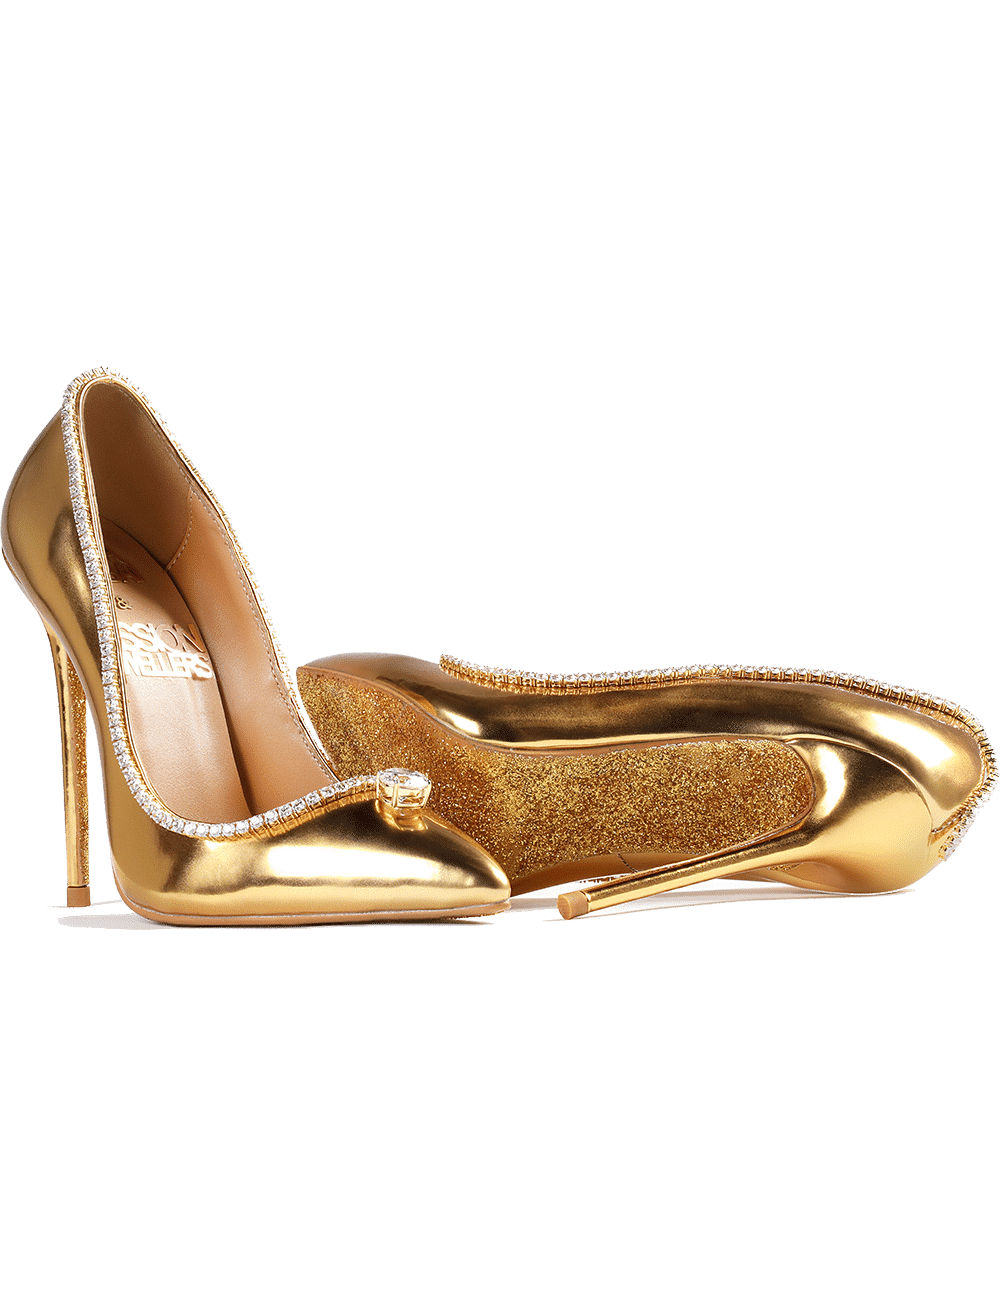 Victorian pair of women's high heel shoes